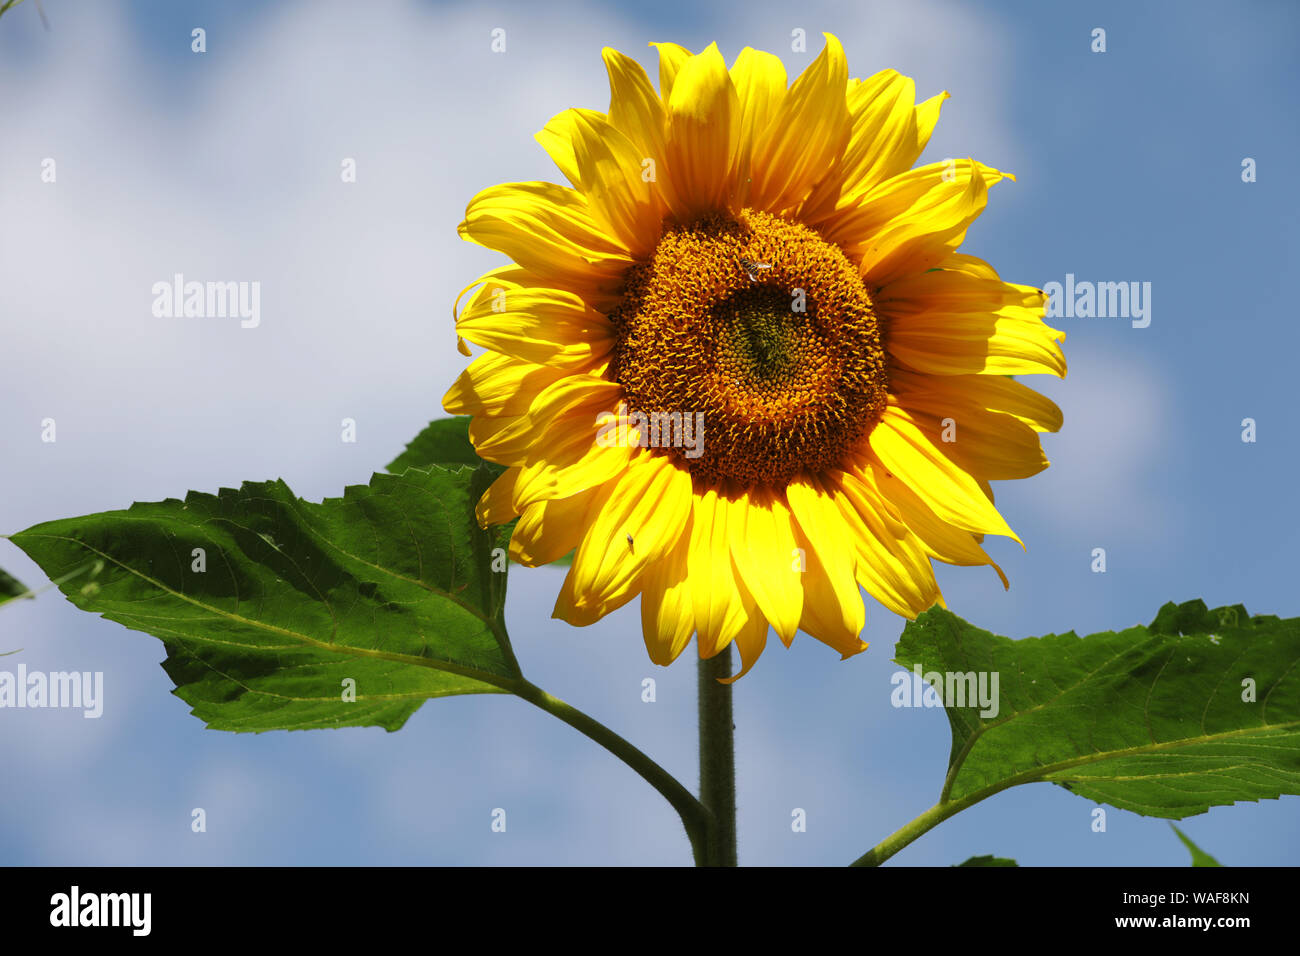 Sunflowers, UK. Stock Photo